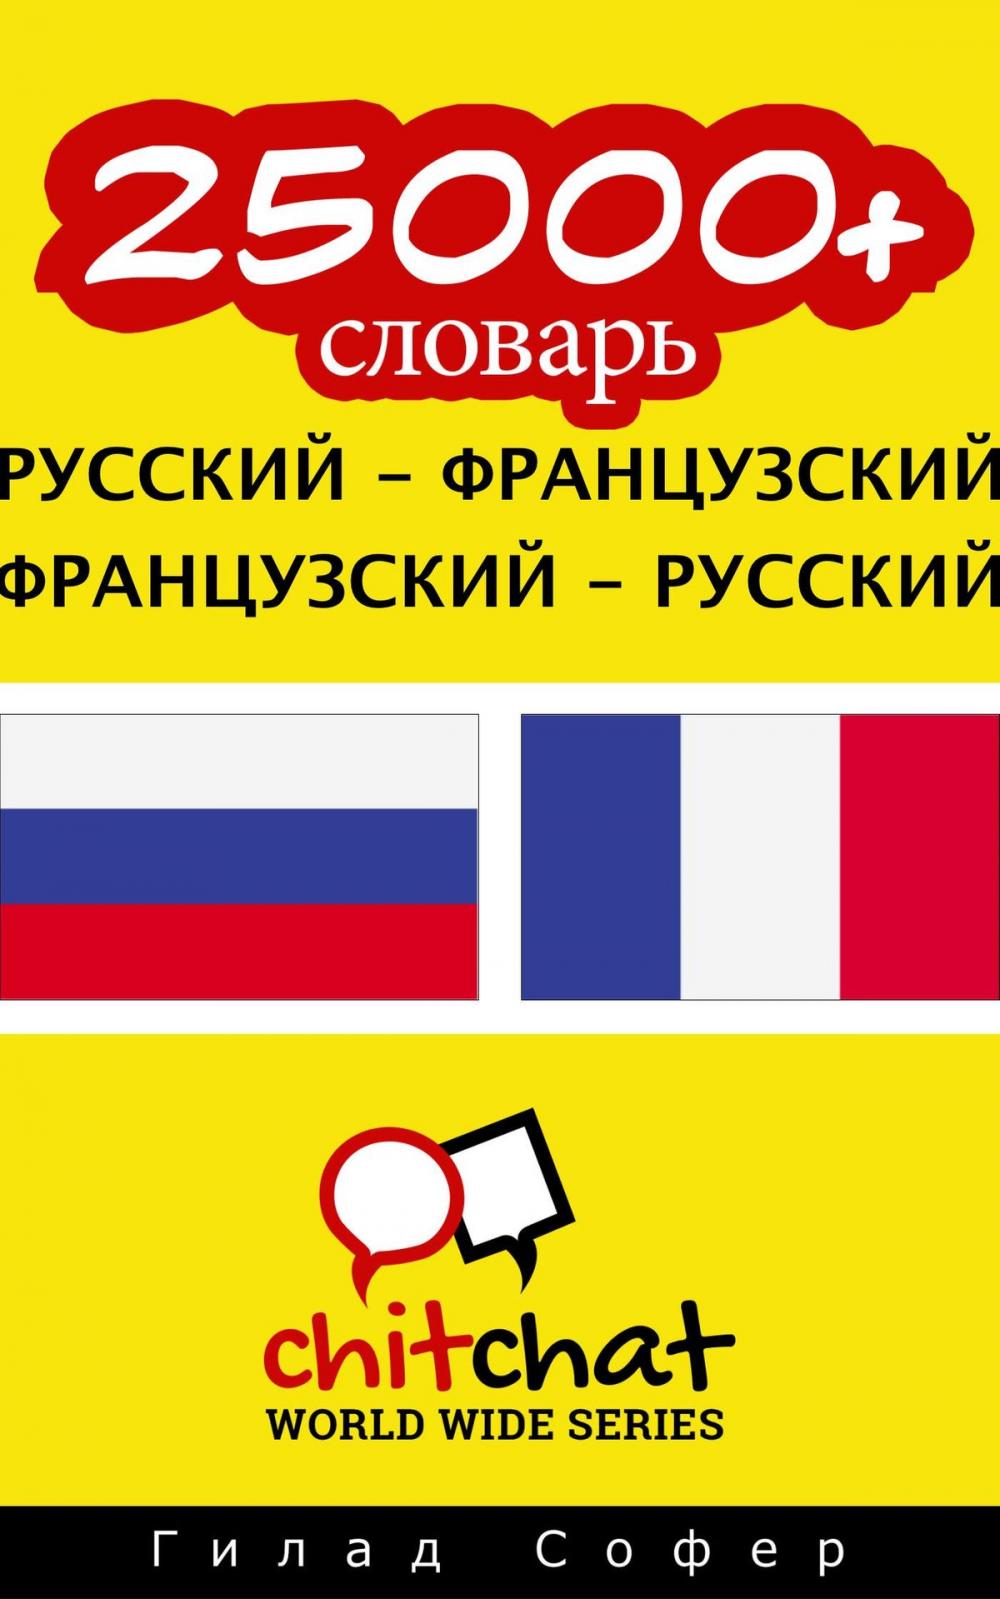 Big bigCover of 25000+ словарь русский - французский